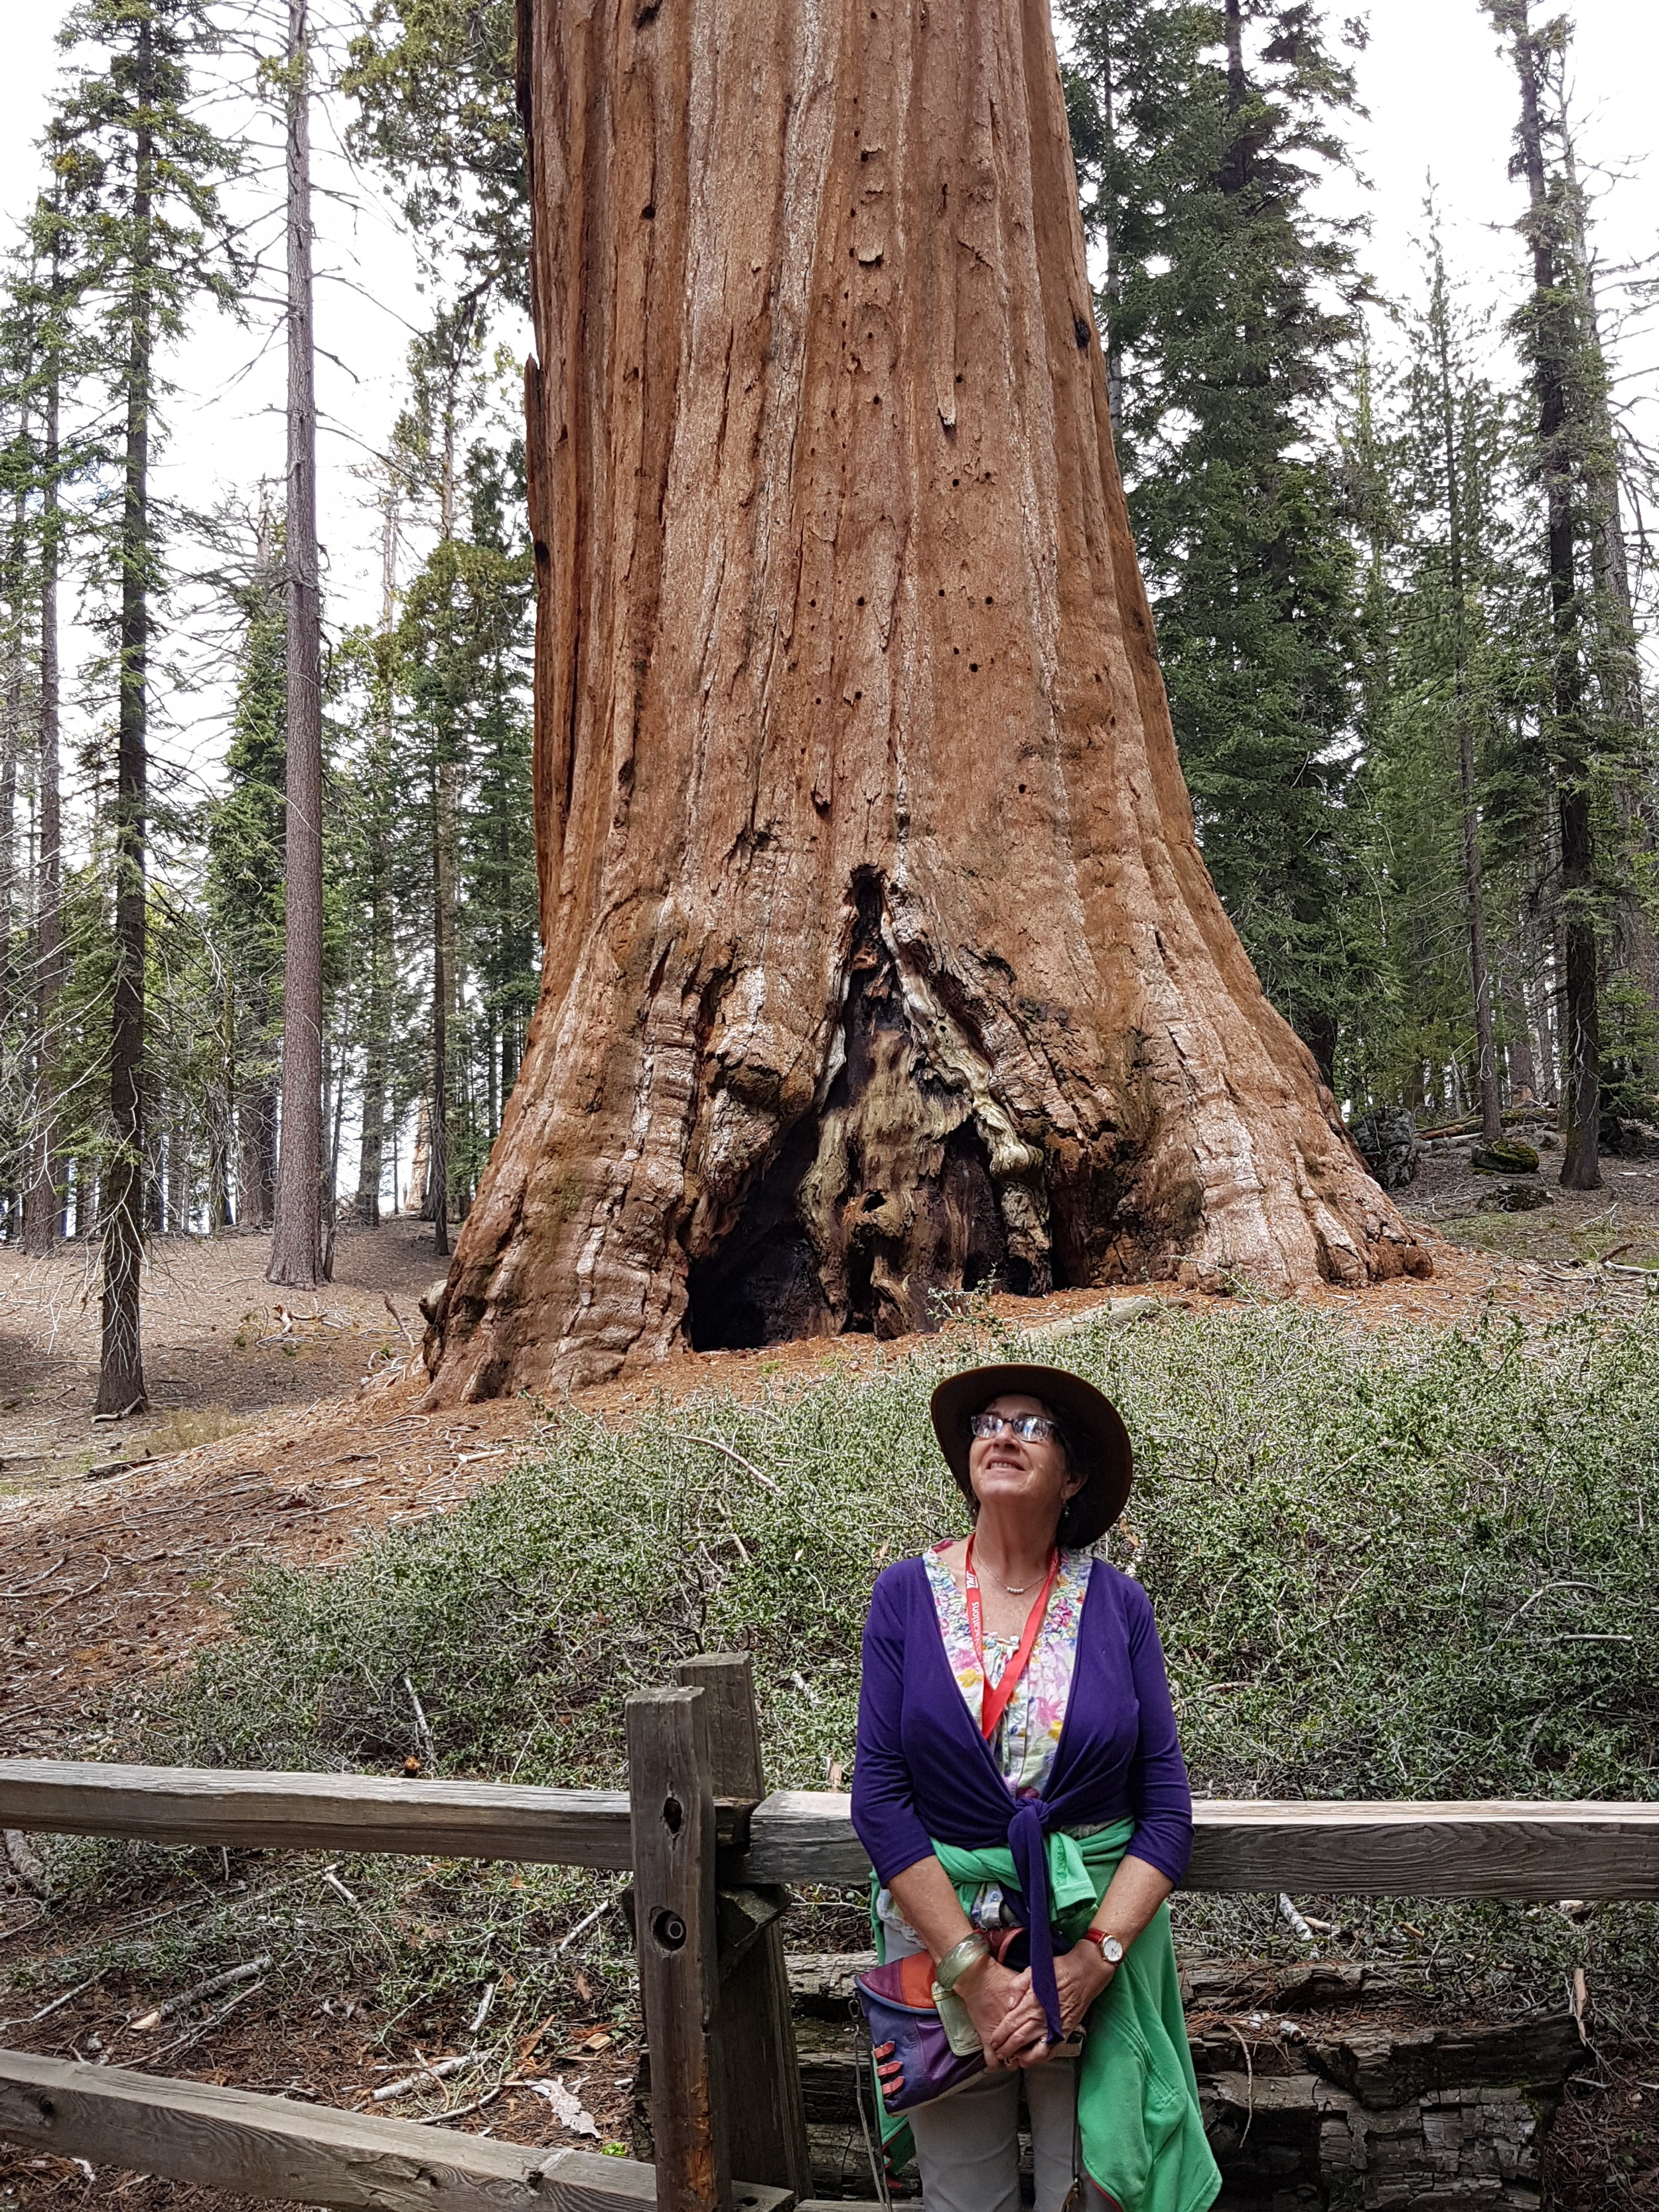 Sequoia NP, California - June 2019